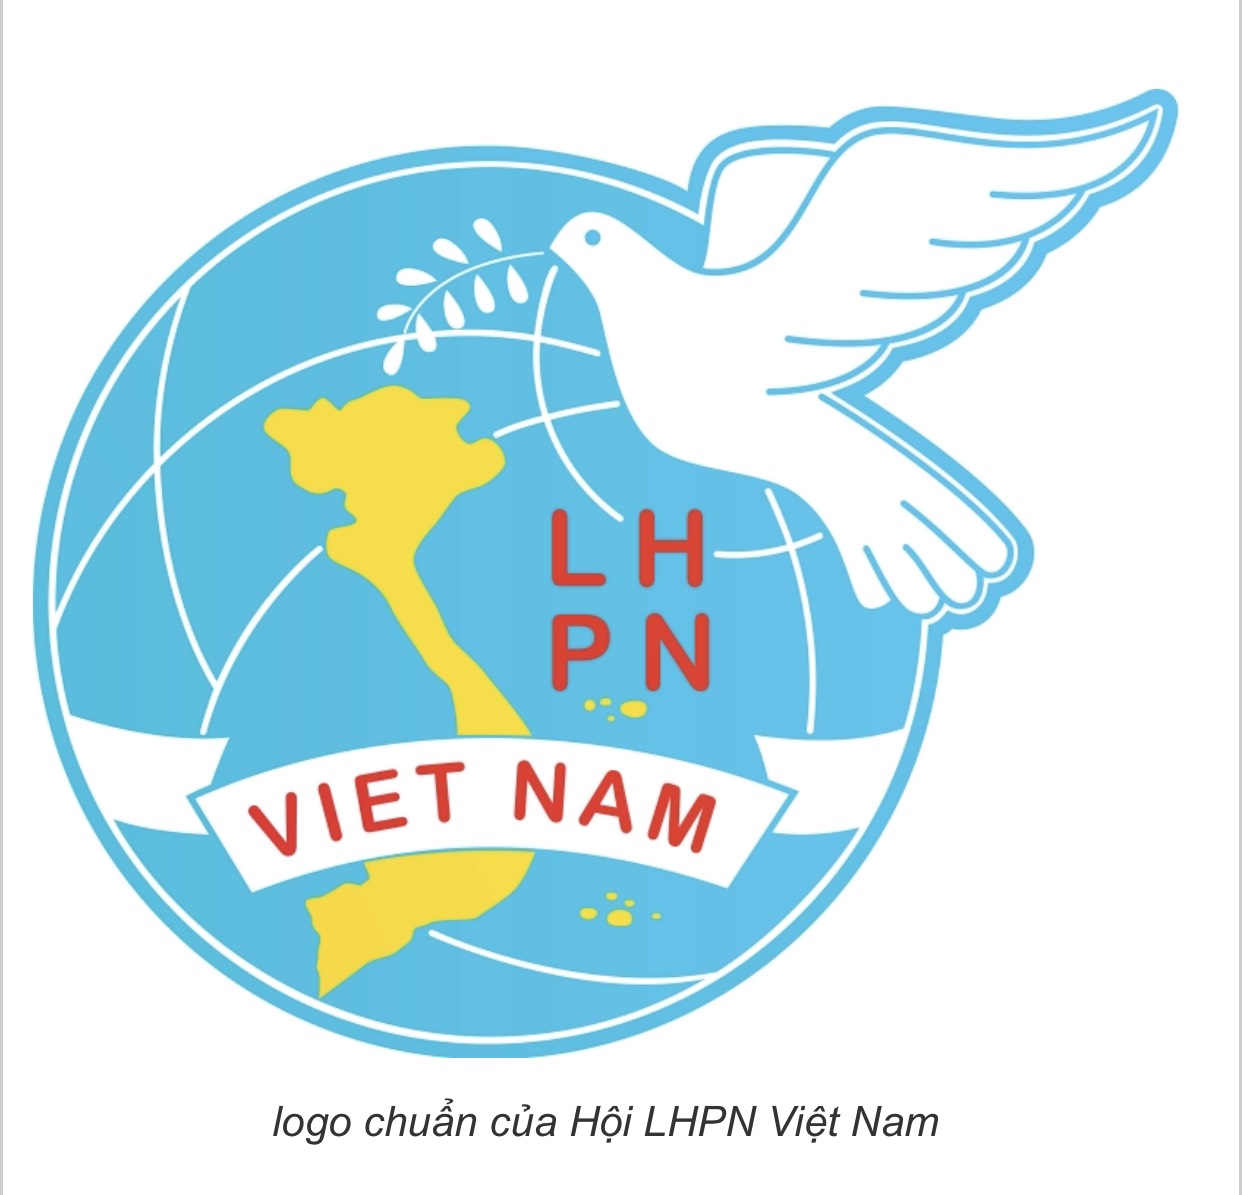 Tây Ninh : 42,30% đại biểu trúng cử Hội đồng nhân dân tỉnh Tây ...